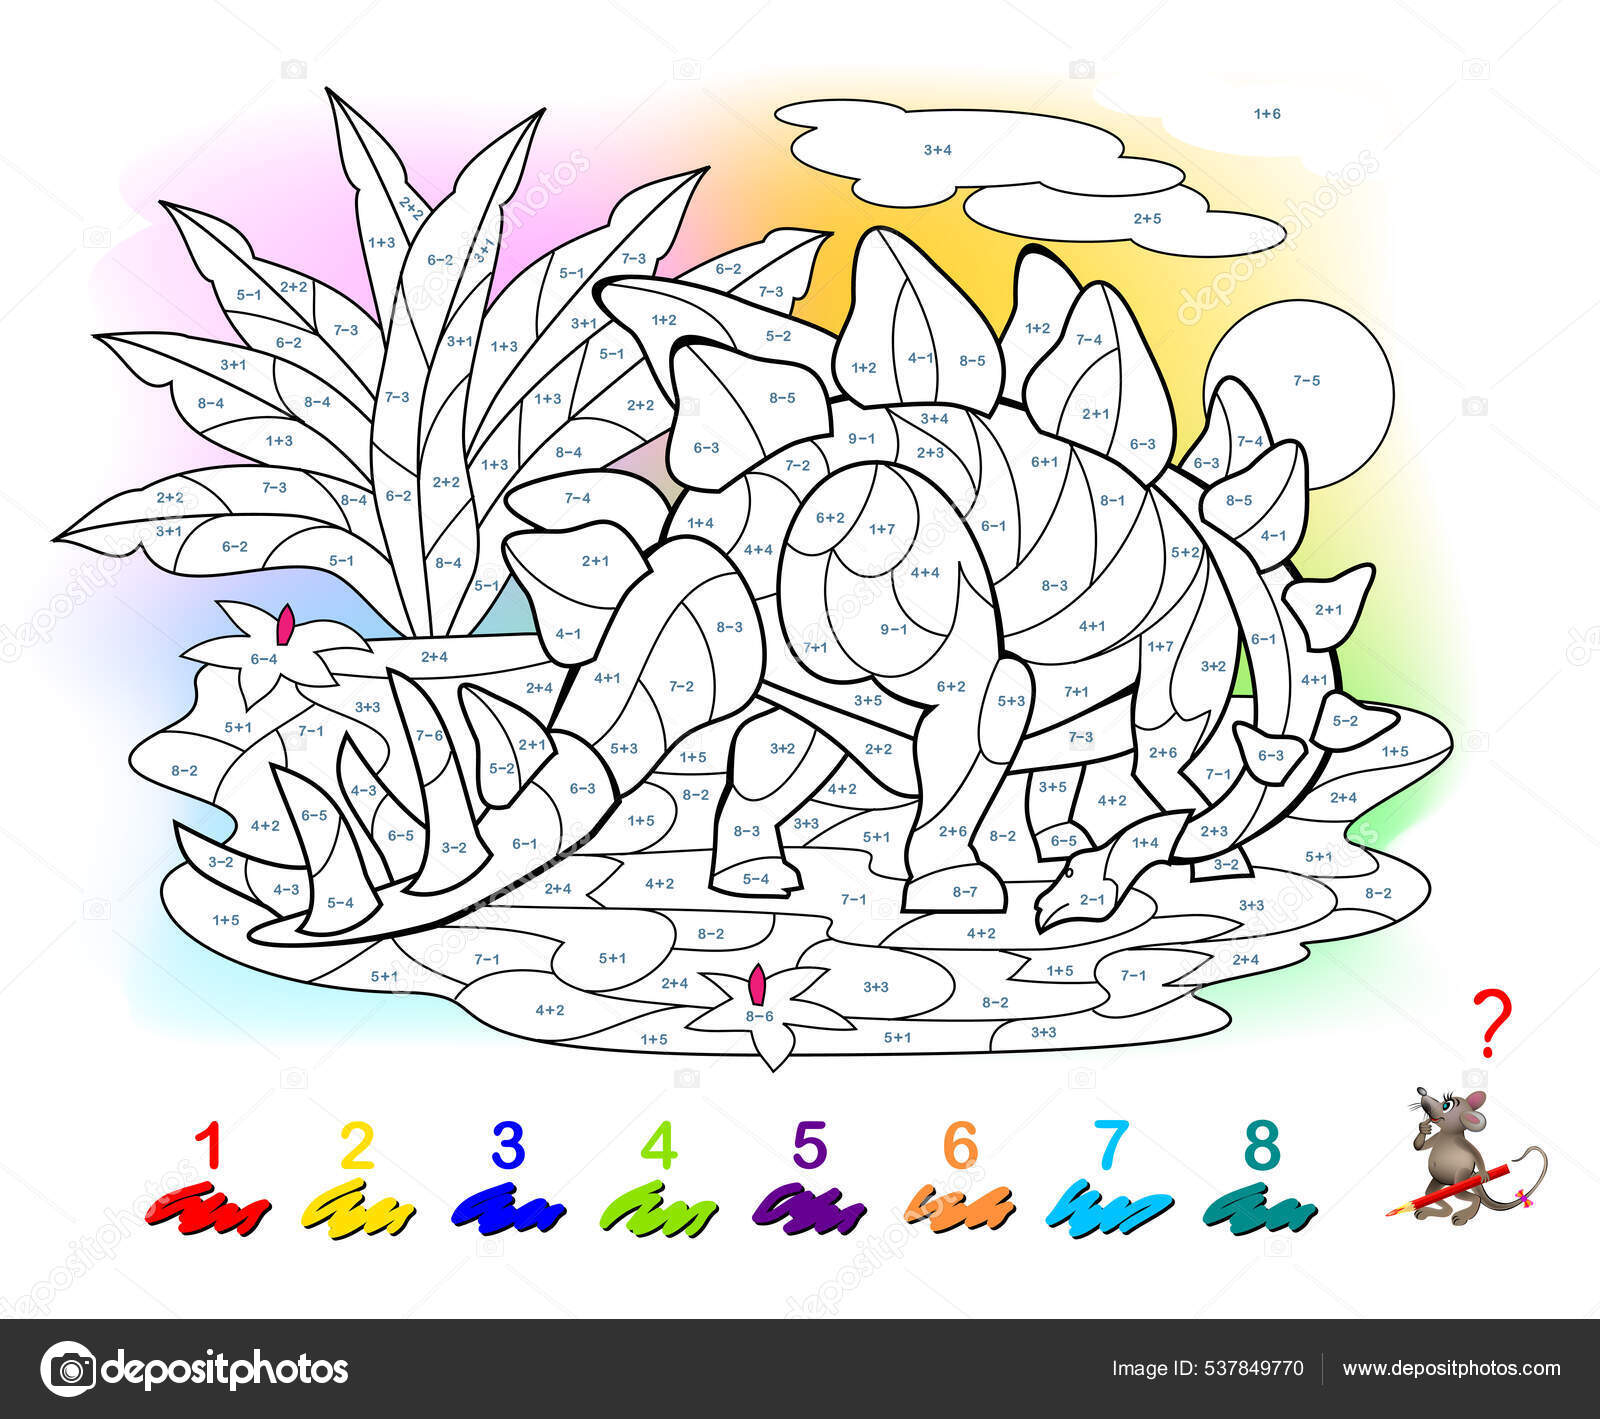 Desenho colorir – Dinossauros - Tarefa Digital